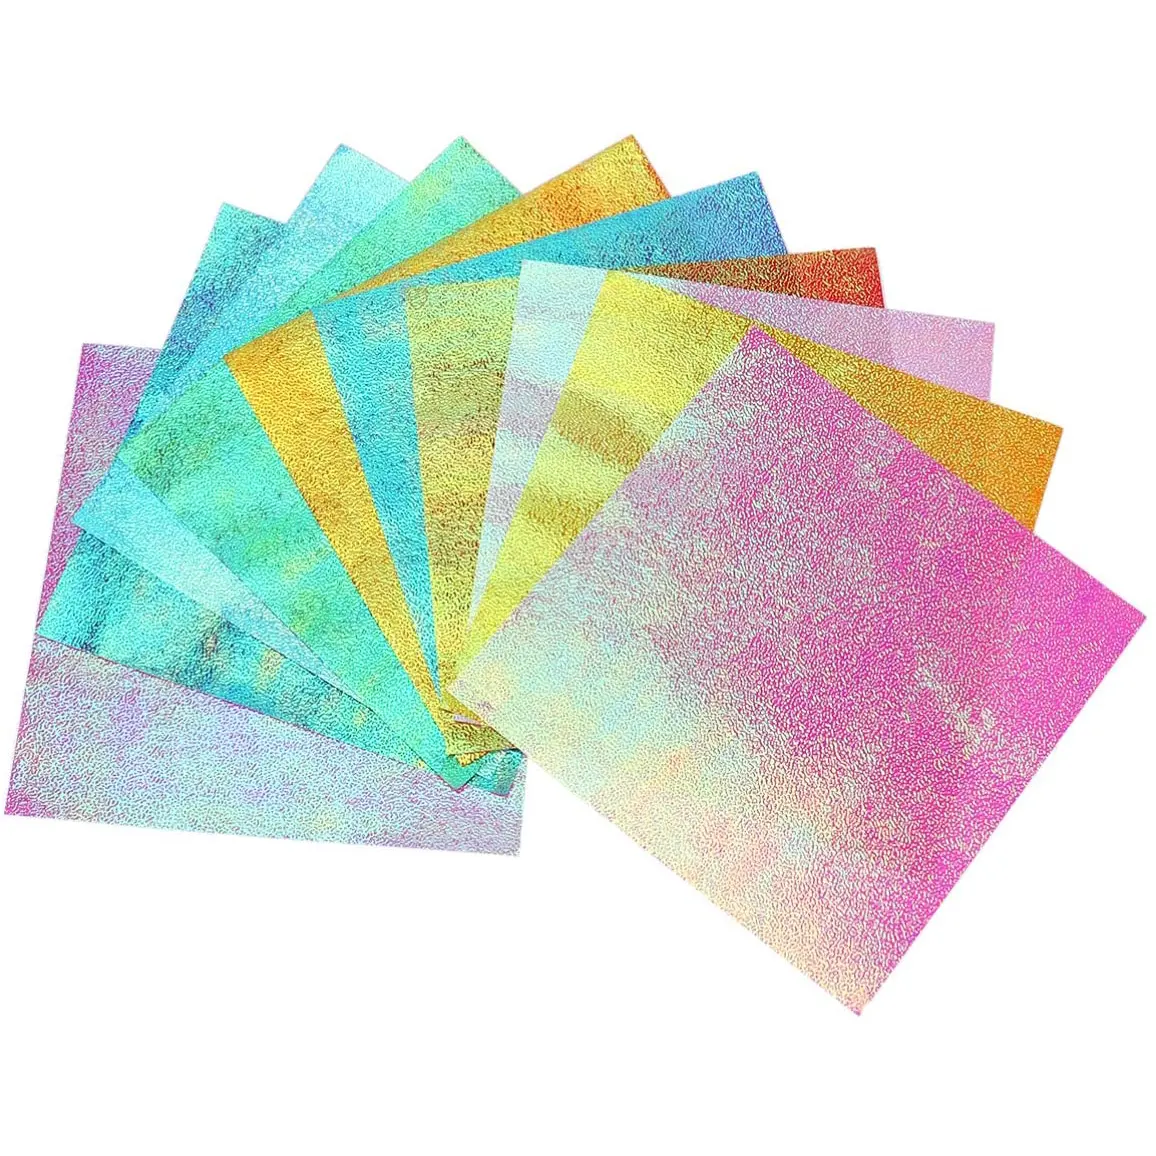 Shiny Iriserende Papier Handcraft Papier Decoratie Papier Voor Diy Arts Craft